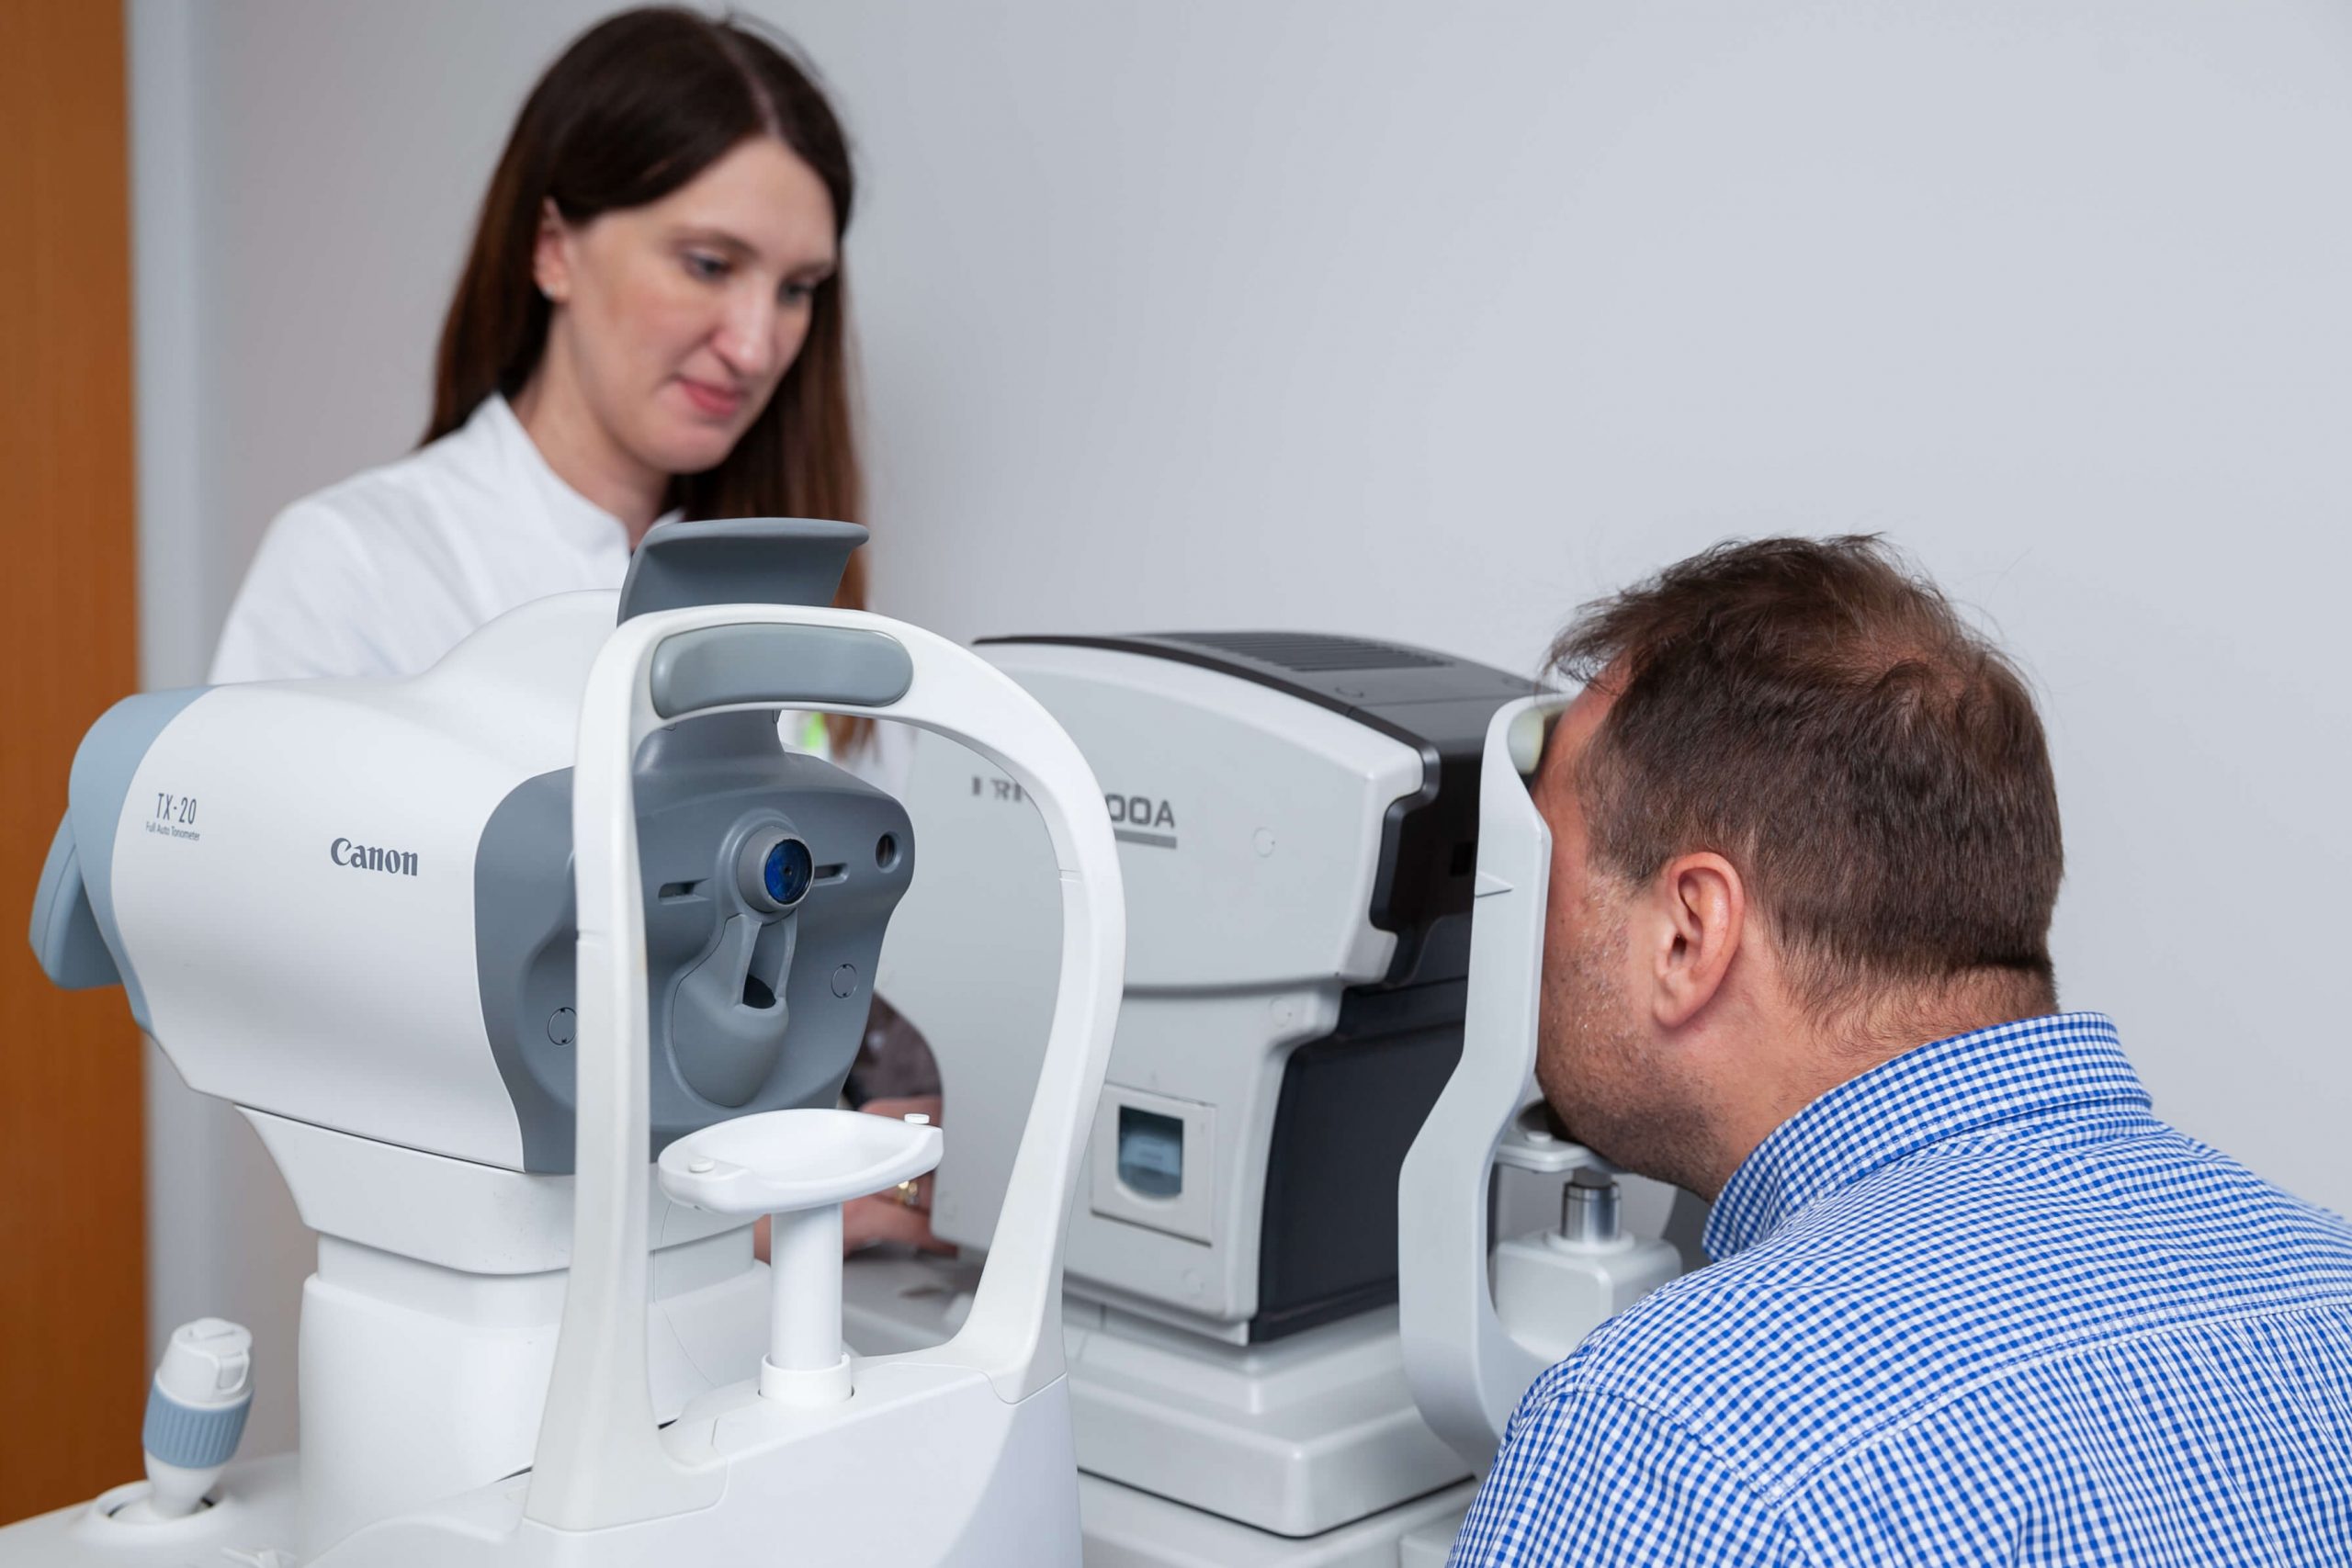 Blikpol 7 scaled - Blikpol Eye Clinic Sopot - najnowocześniejsze technologie w korekcji wzroku i leczeniu zaćmy